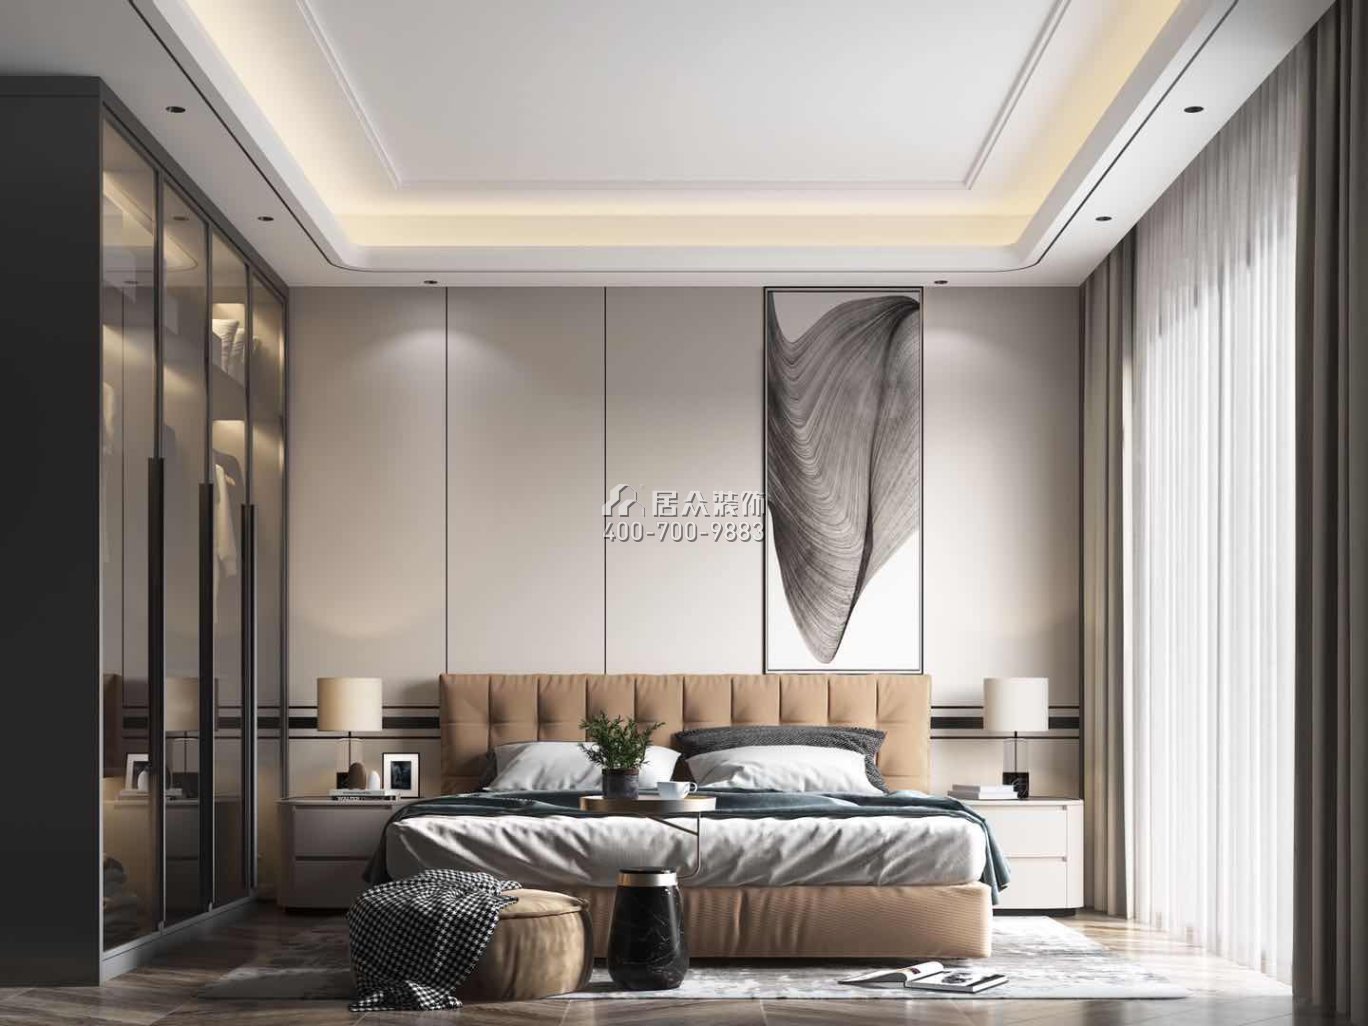 海逸豪庭267平方米現代簡約風格別墅戶型臥室裝修效果圖